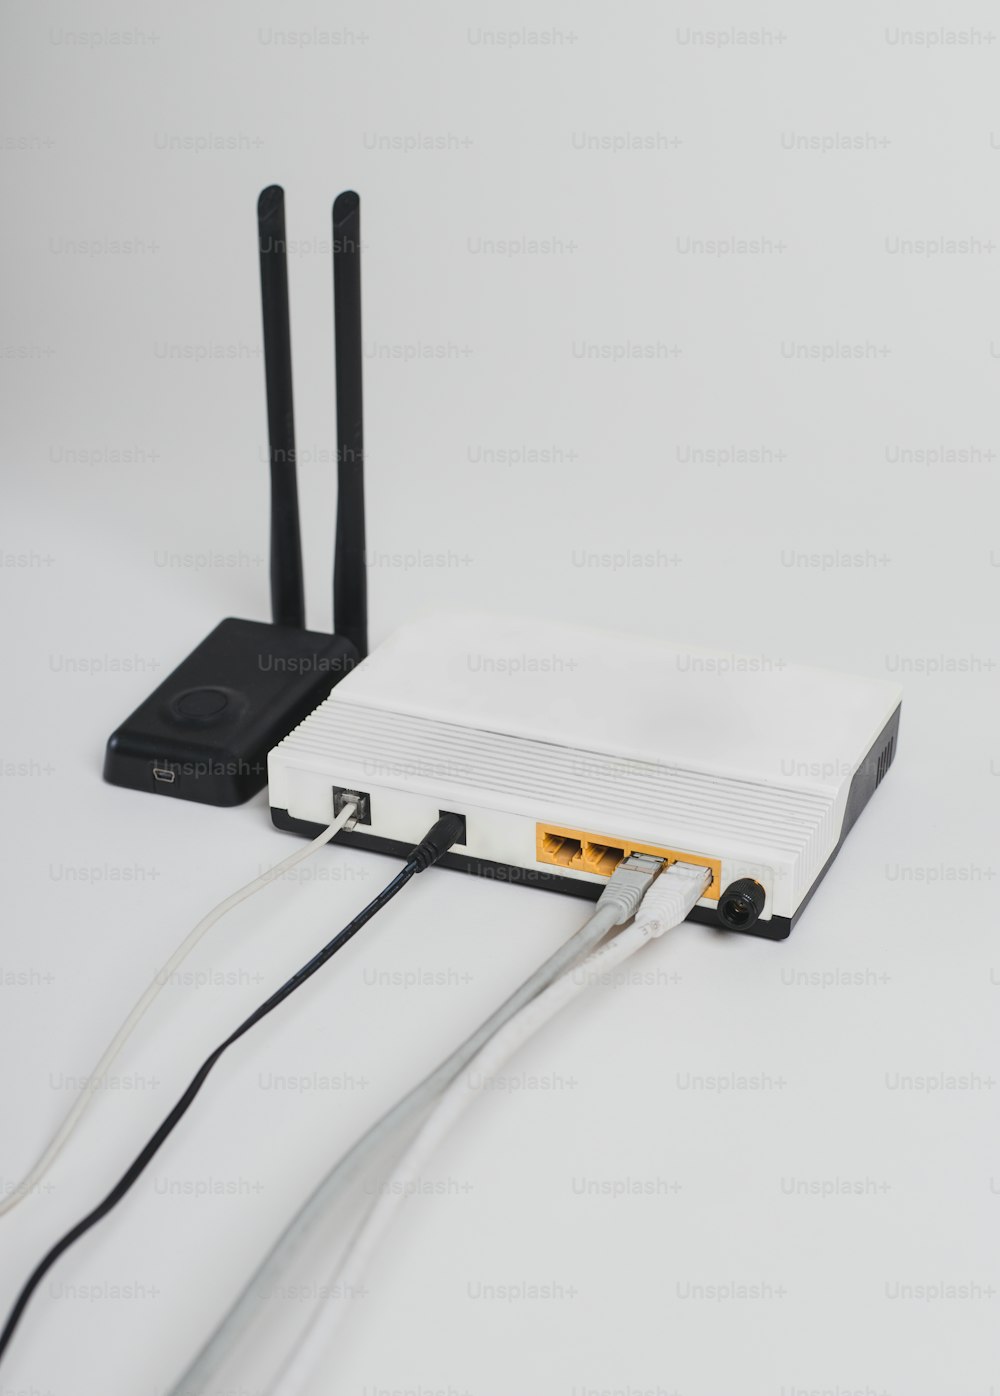 un routeur connecté à un routeur sur une surface blanche